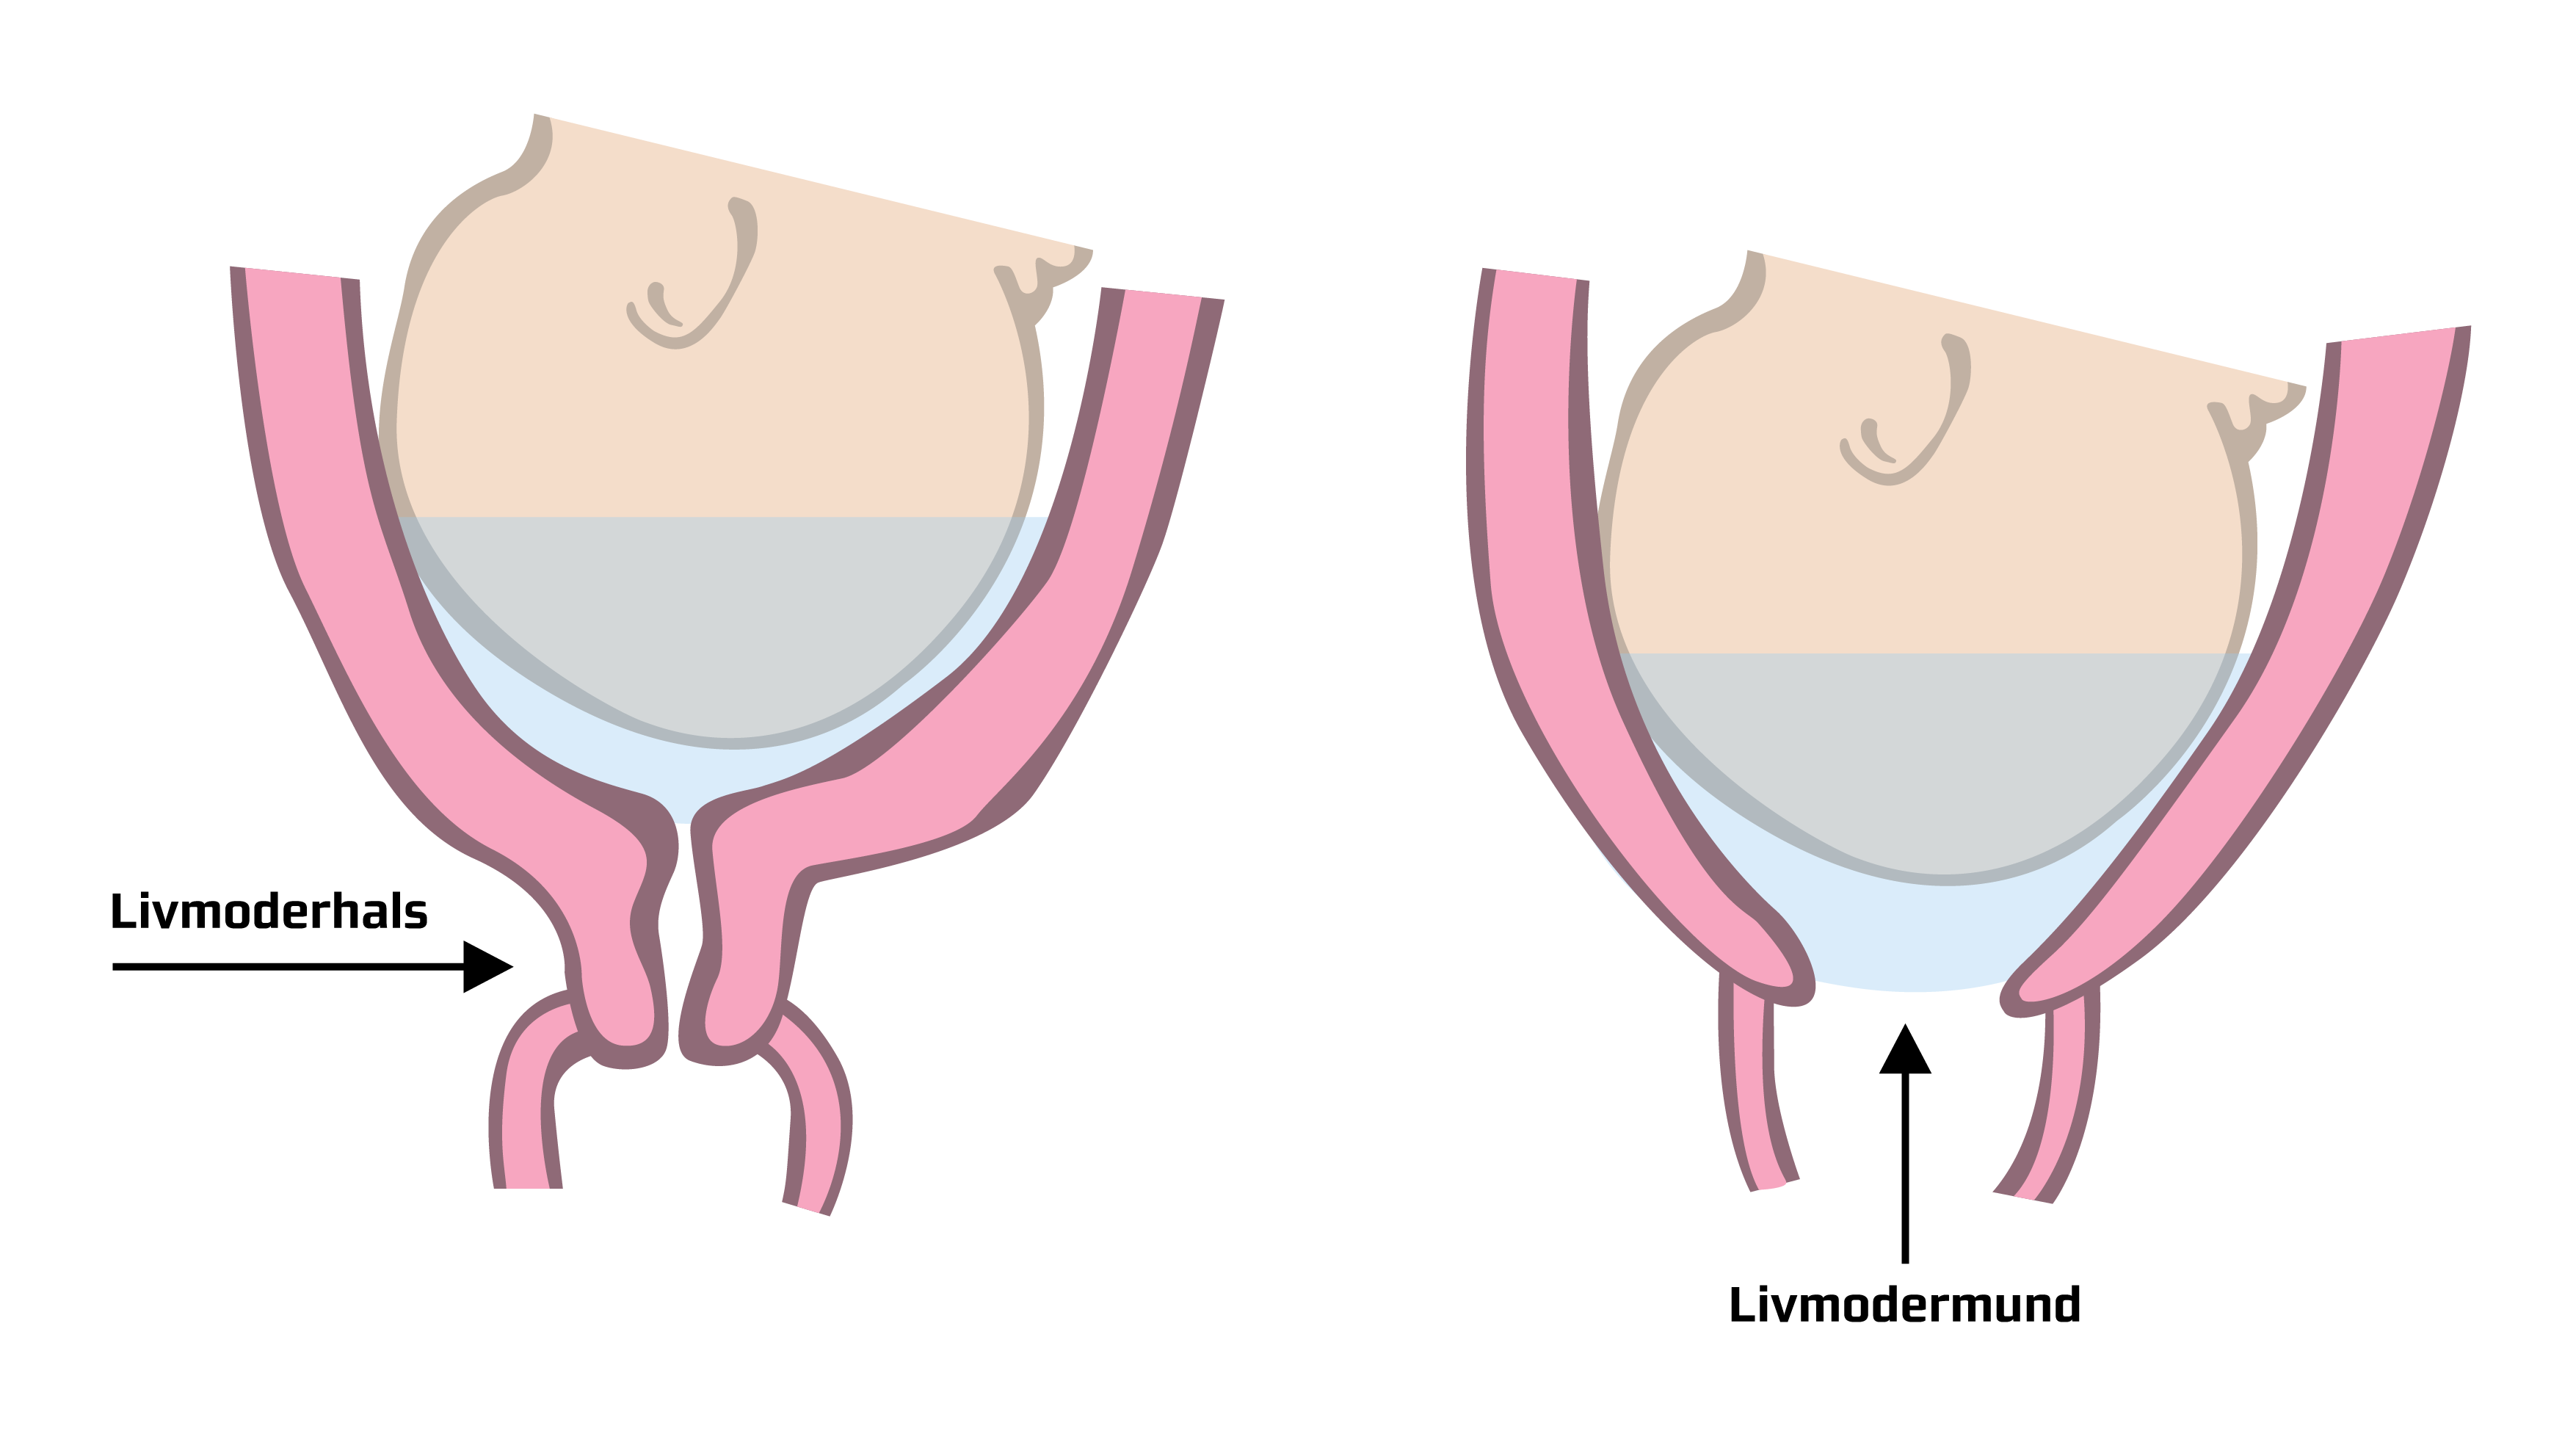 Her vises forskellen på "umoden" og "moden" livmoderhals/livmodermund.